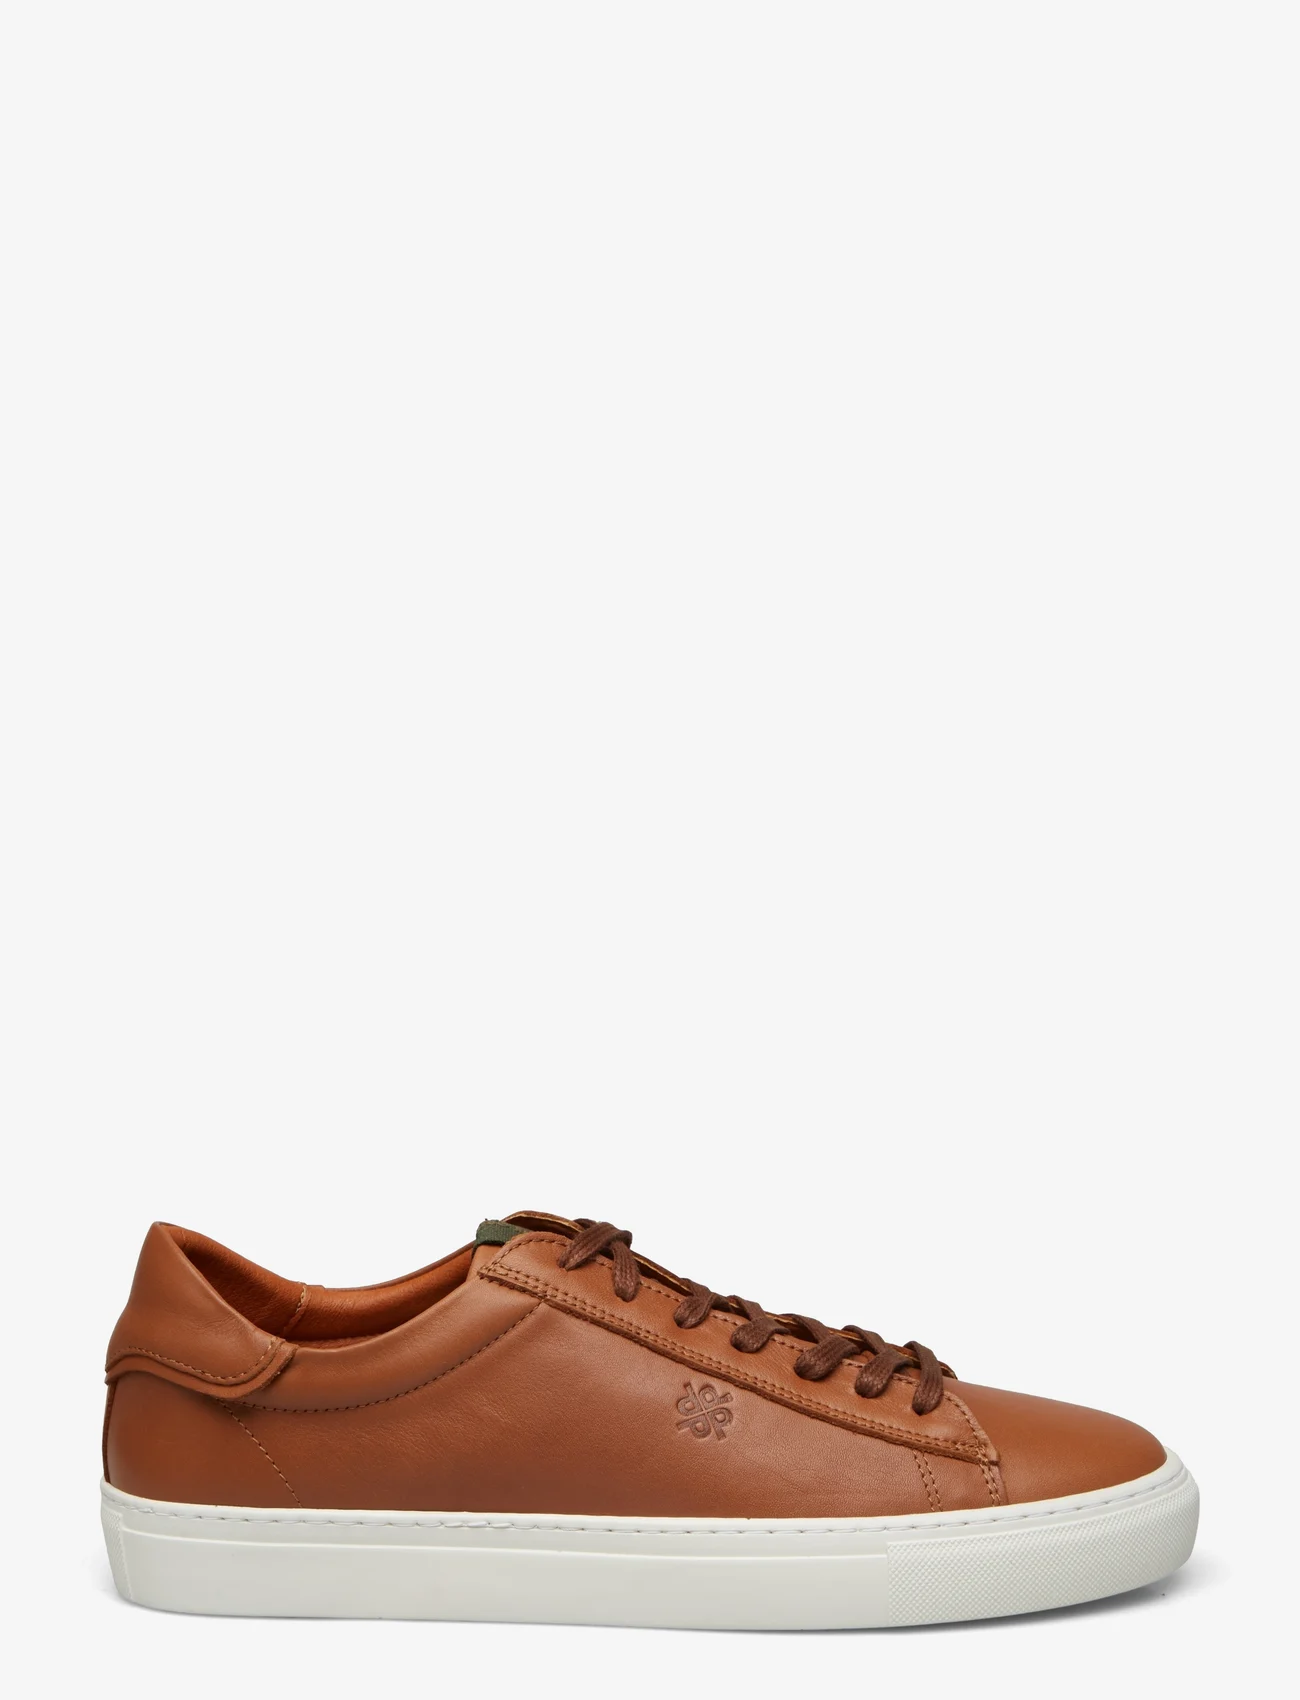 Playboy Footwear - Henri - lav ankel - brown leather - 1